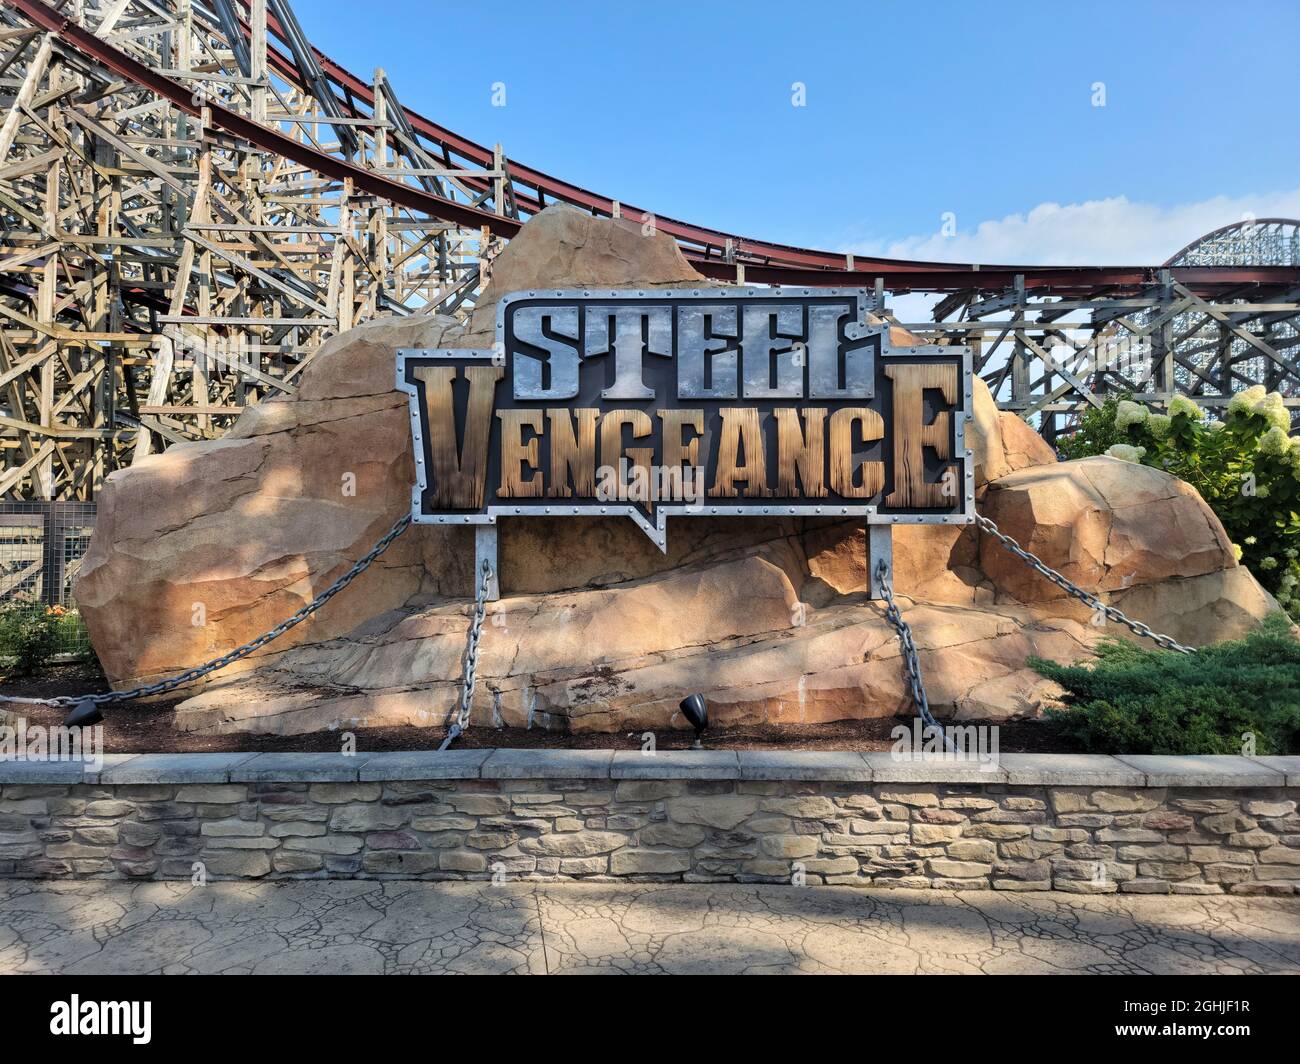 Lo "Steel Vengeance" è stato inaugurato a Cedar Point il 5 maggio 2018. Questa corsa è la prima montagne russe iper-ibride e scende a 90 gradi. Foto Stock